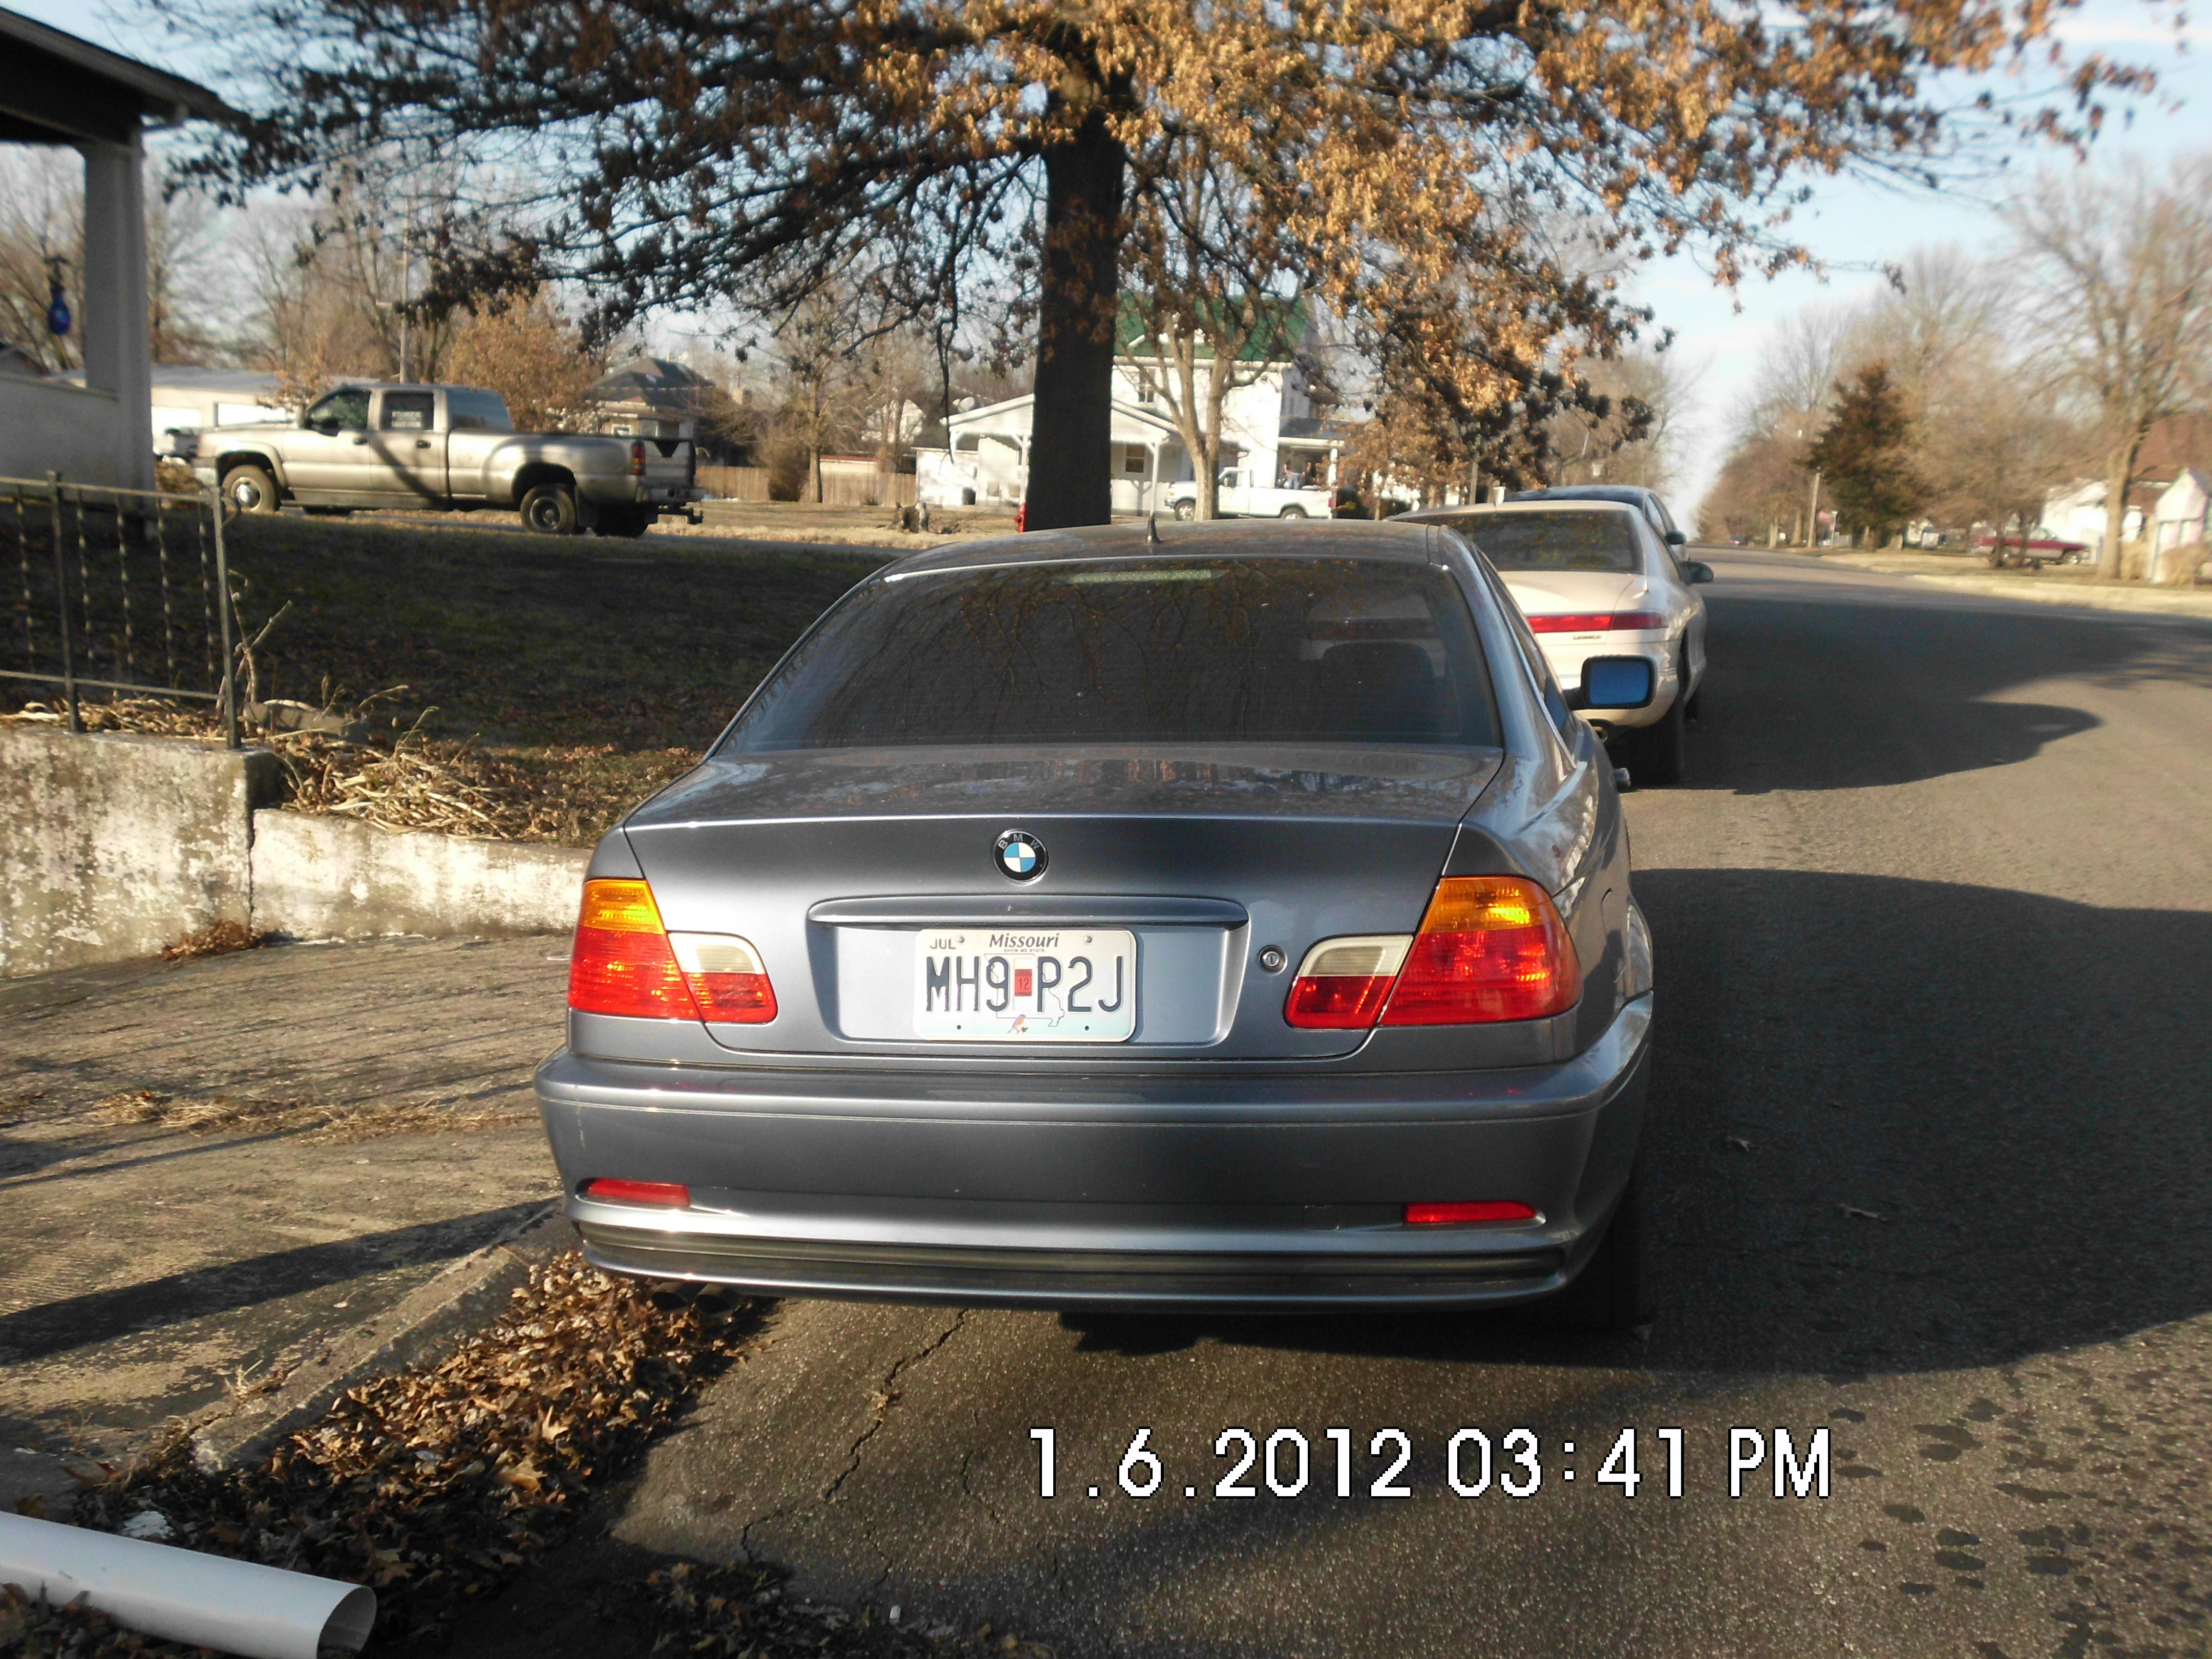 BMW 323CL